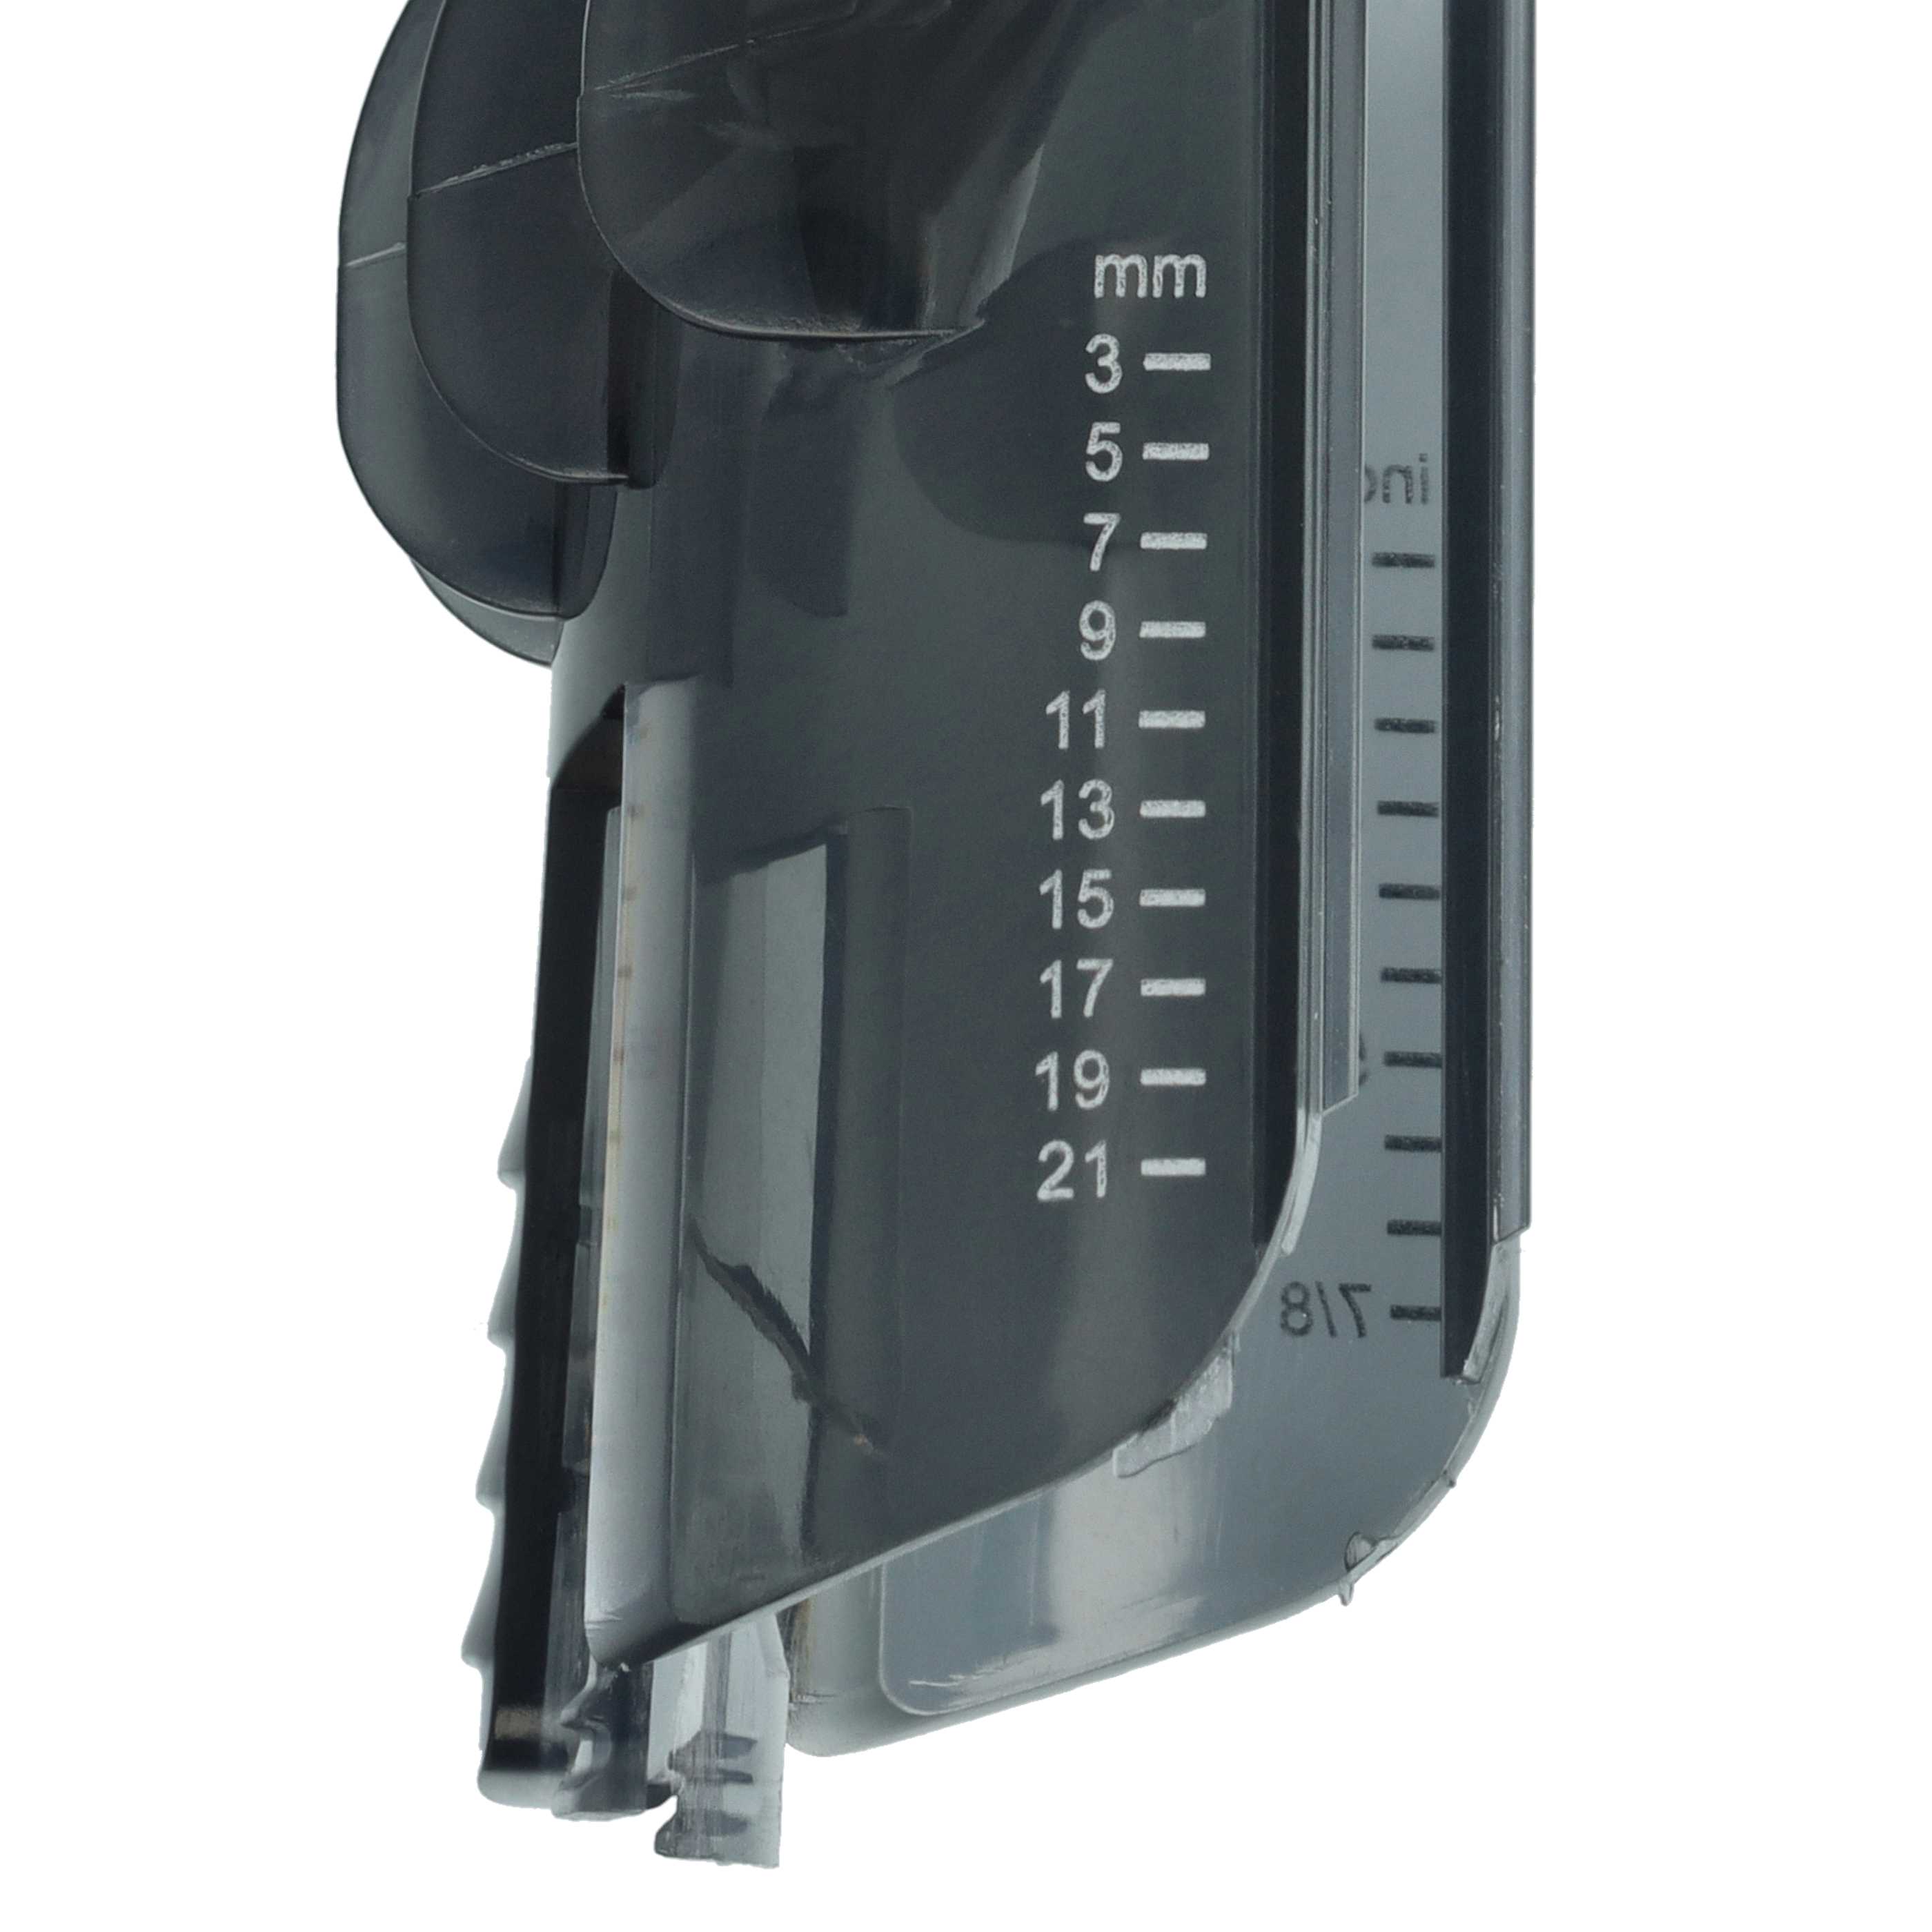 Kammaufsatz 3 - 21 mm (1/8" - 7/8") als Ersatz für Philips CRP389 für Philips Haarschneidemaschine